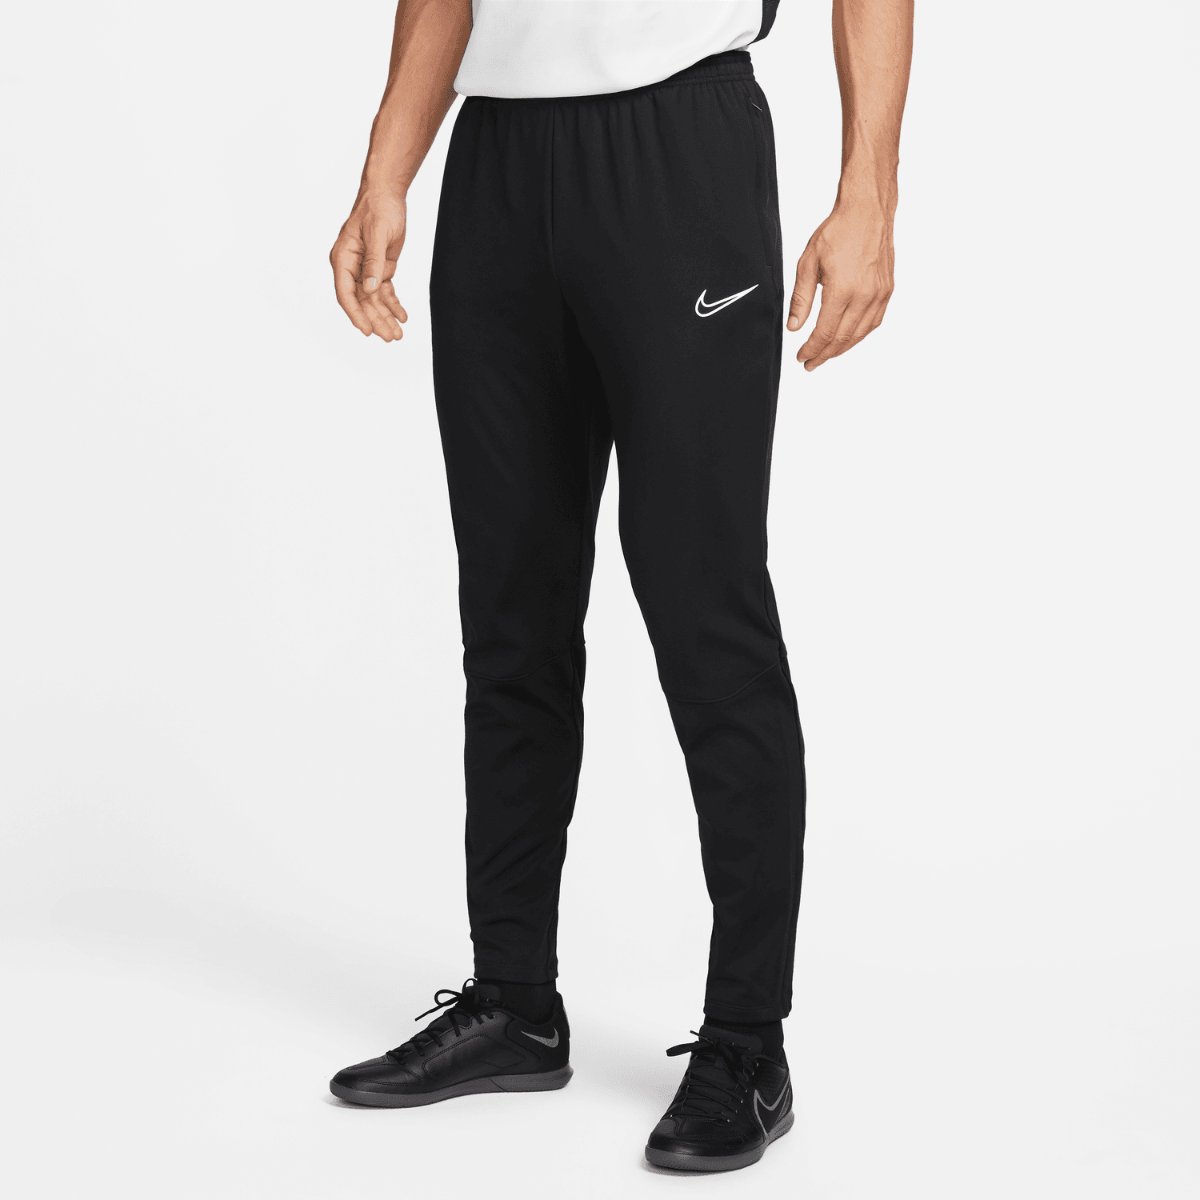 Pantalon Nike Therma-Fit Academy - Noir/Blanc